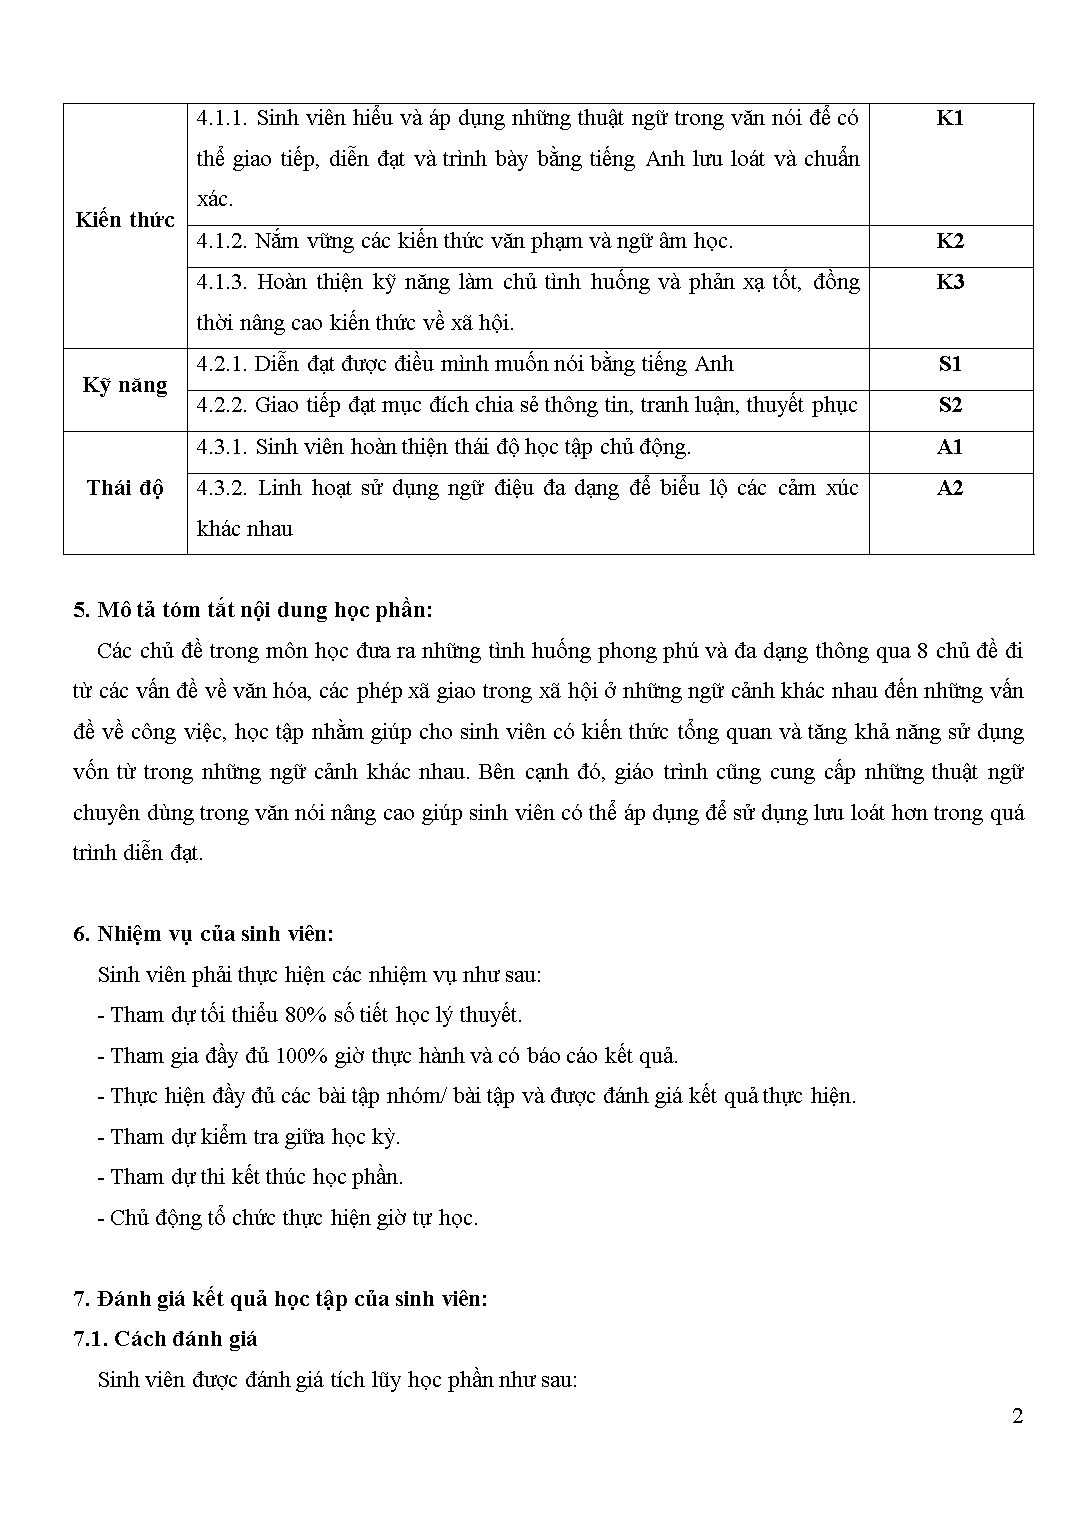 Đề cương chi tiết học phần Nói tiếng Anh 3 - Speaking 3 trang 2